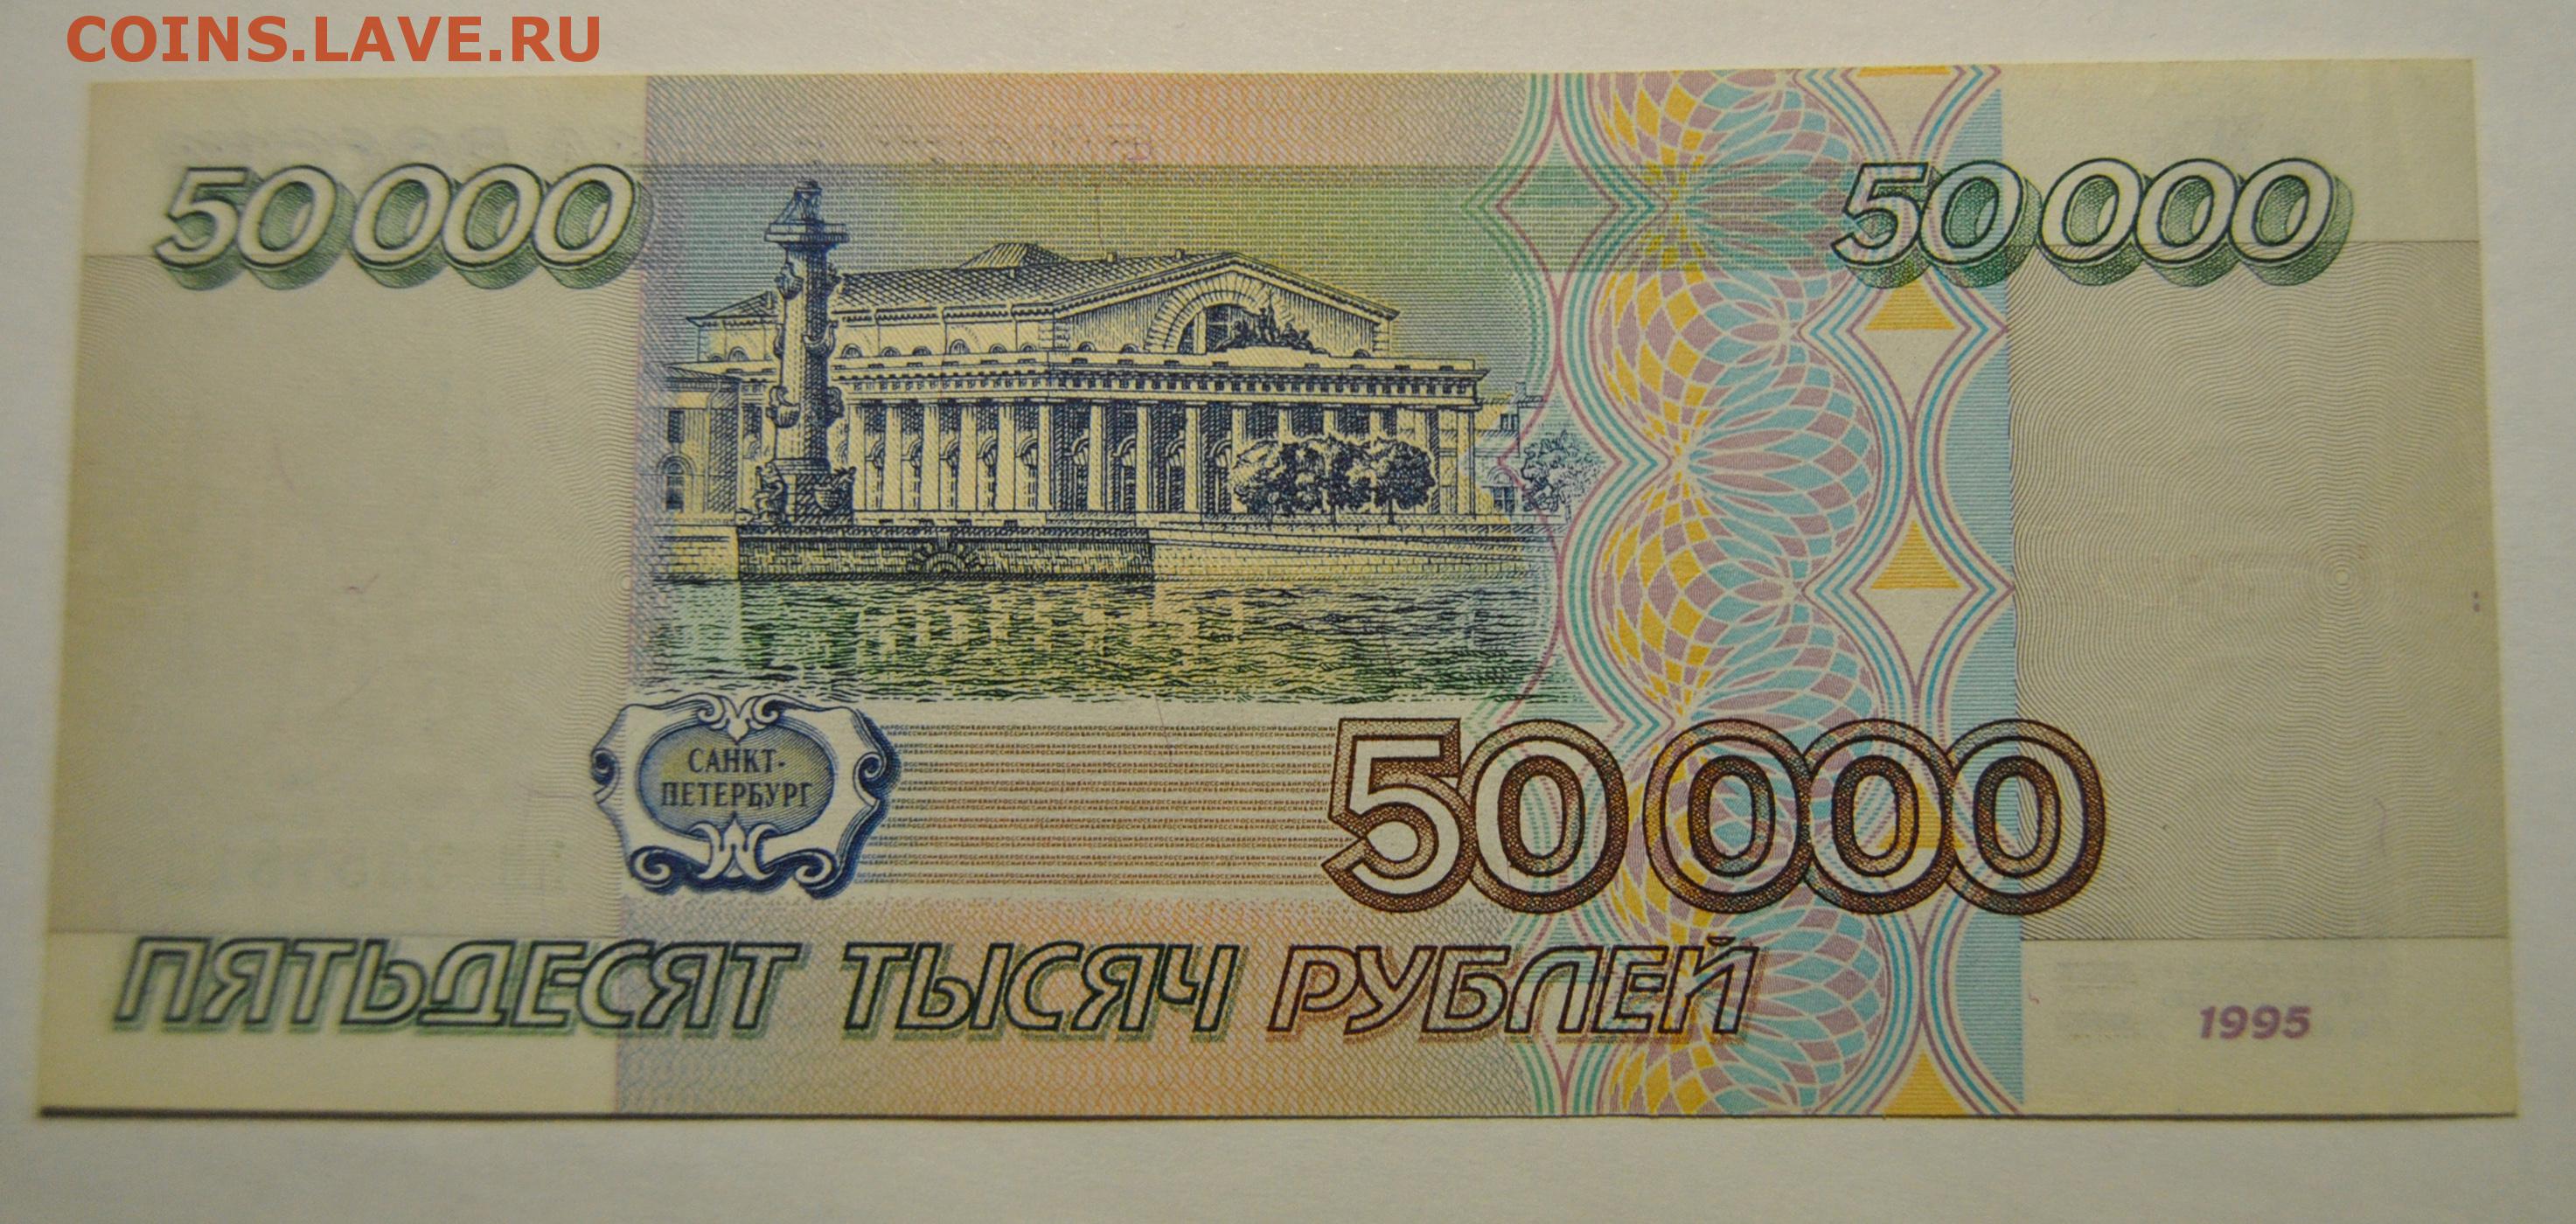 8 т рублей. 50000 Рублей 1995 года. 5 Тысяч рублей 1995 года. 10т рублей. 10000 Рублей 1995 года по УФ.